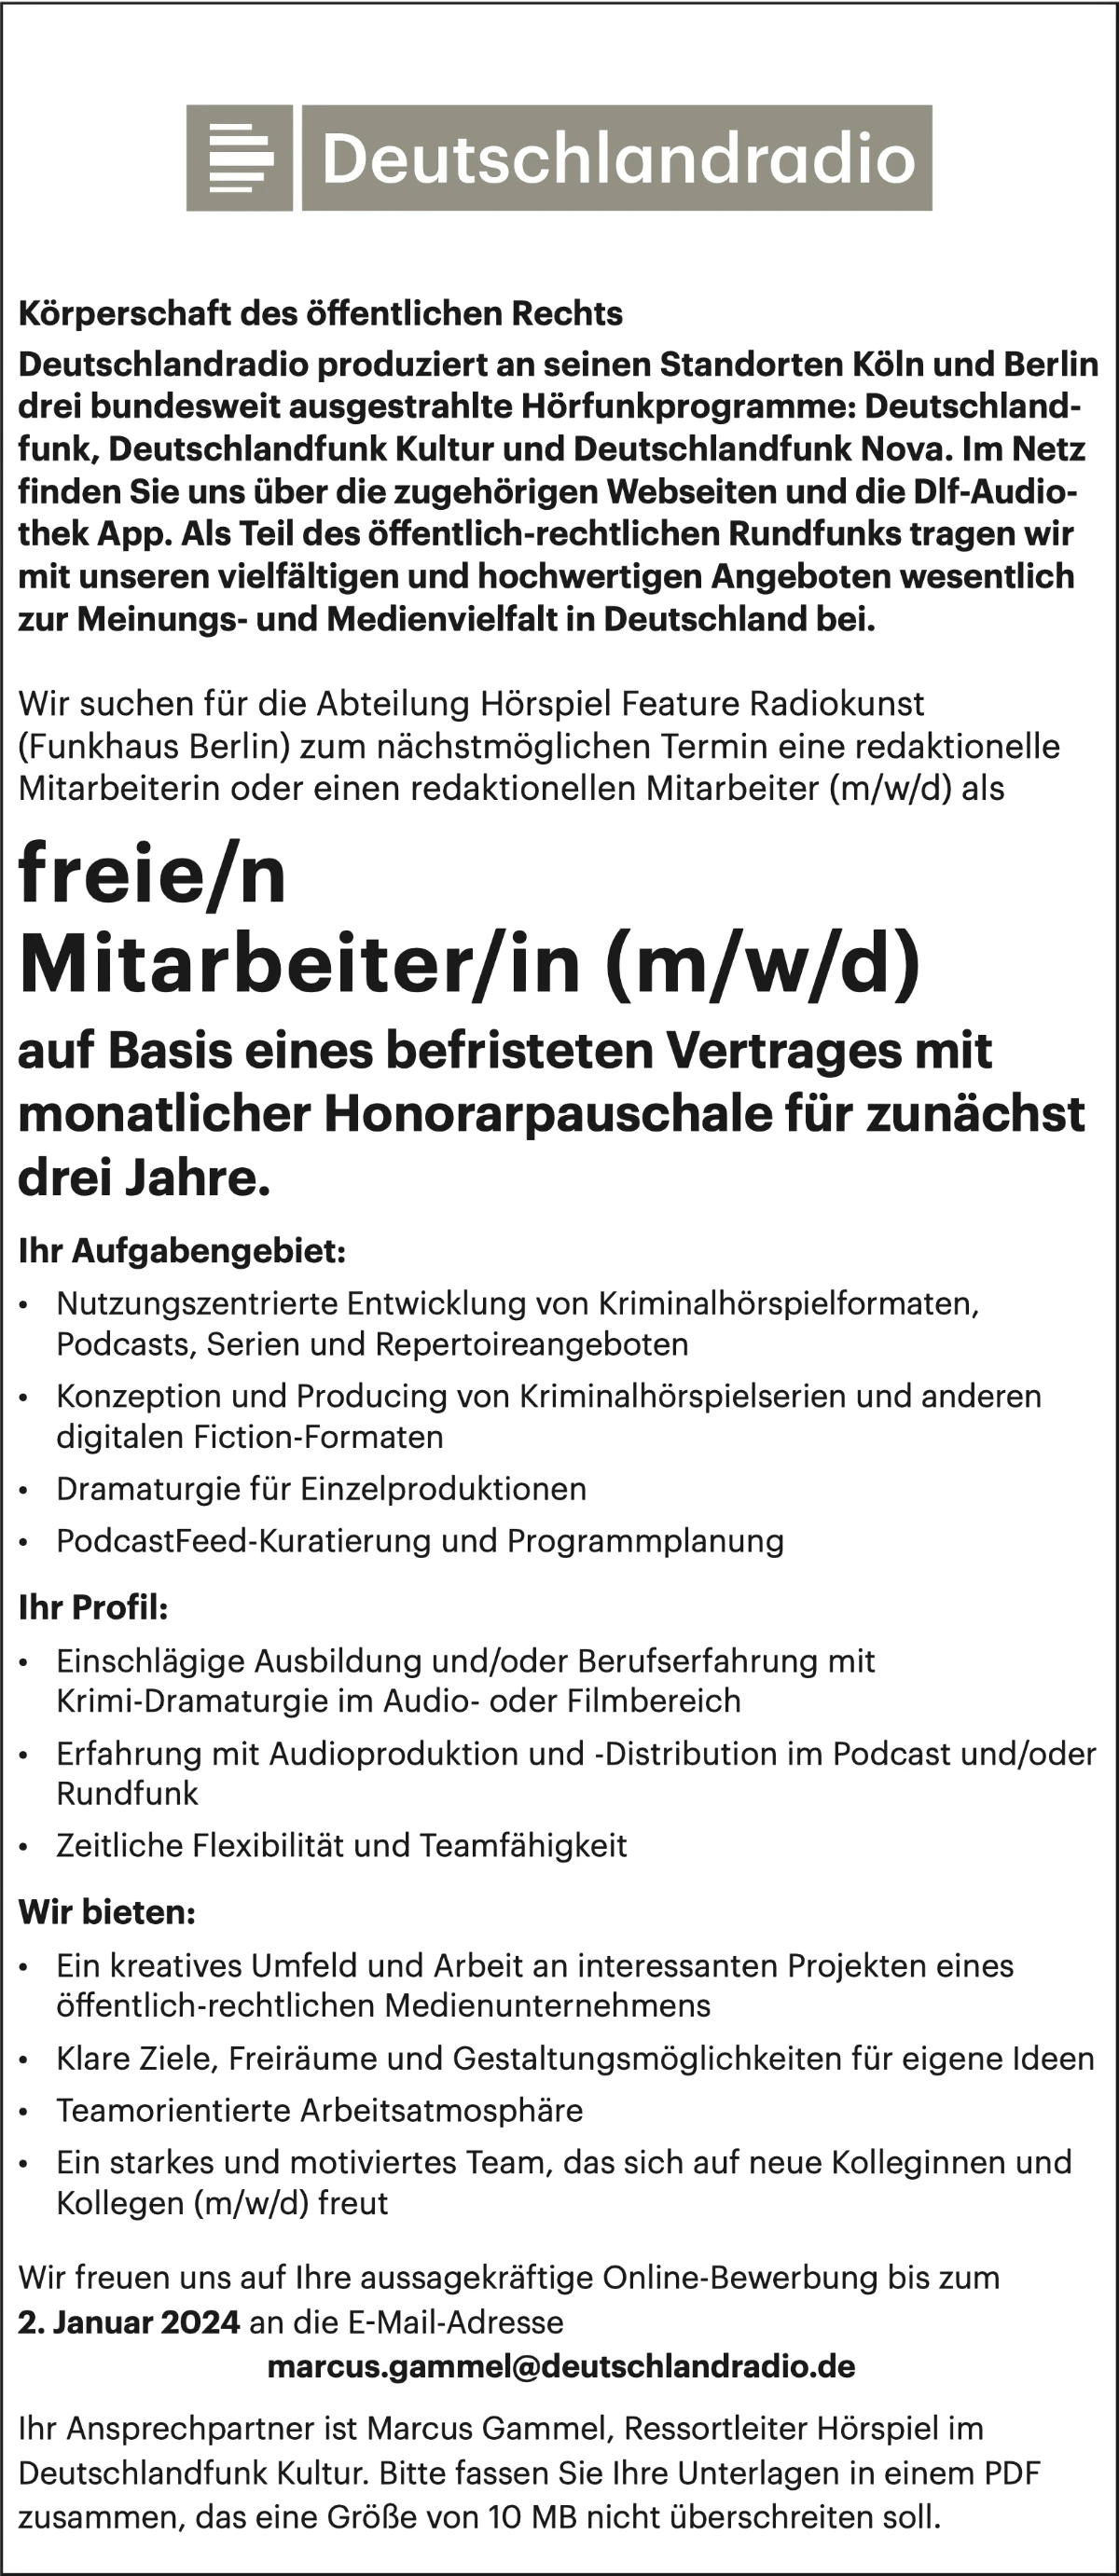 Deutschlandradio sucht für die Abteilung Hörspiel Feature Radiokunst (Funkhaus Berlin) zum nächstmöglichen Termin eine redaktionelle Mitarbeiterin oder einen redaktionellen Mitarbeiter (m/w/d) als freie/n Mitarbeiter/in (m/w/d) auf Basis eines befristeten Vertrages mit monatlicher Honorarpauschale für zunächst drei Jahre.